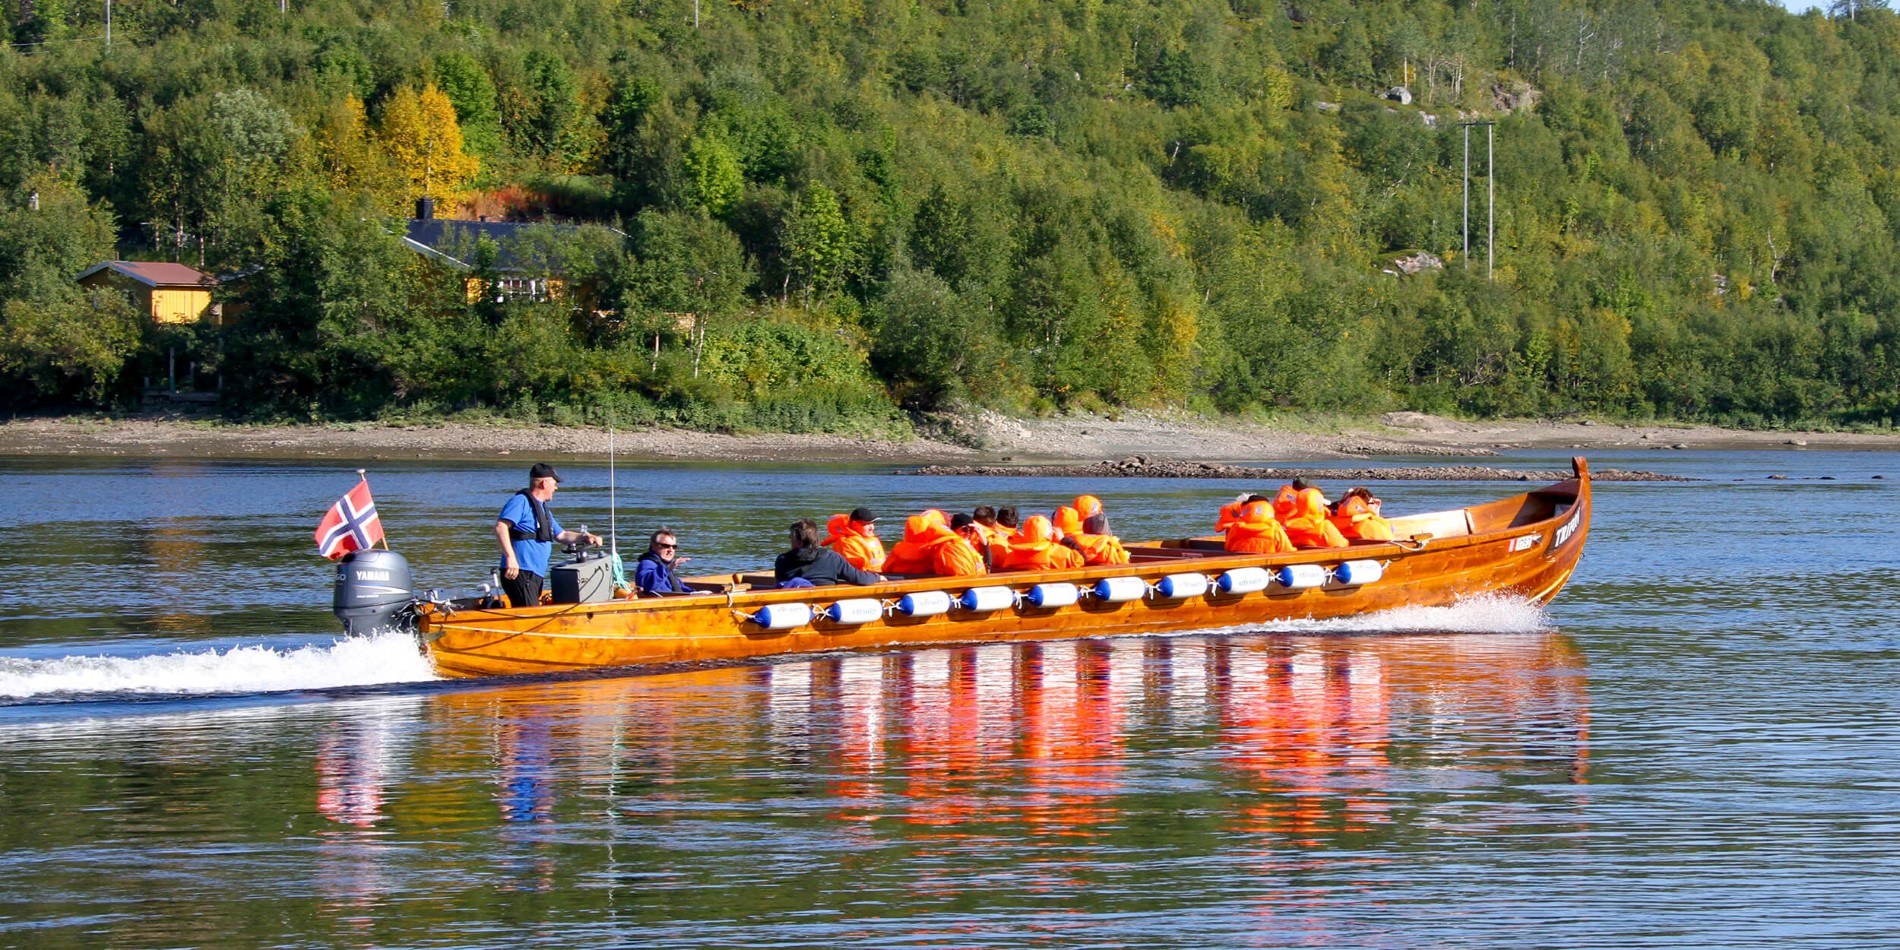 En gruppe mennesker rir på baksiden av en båt i vannet